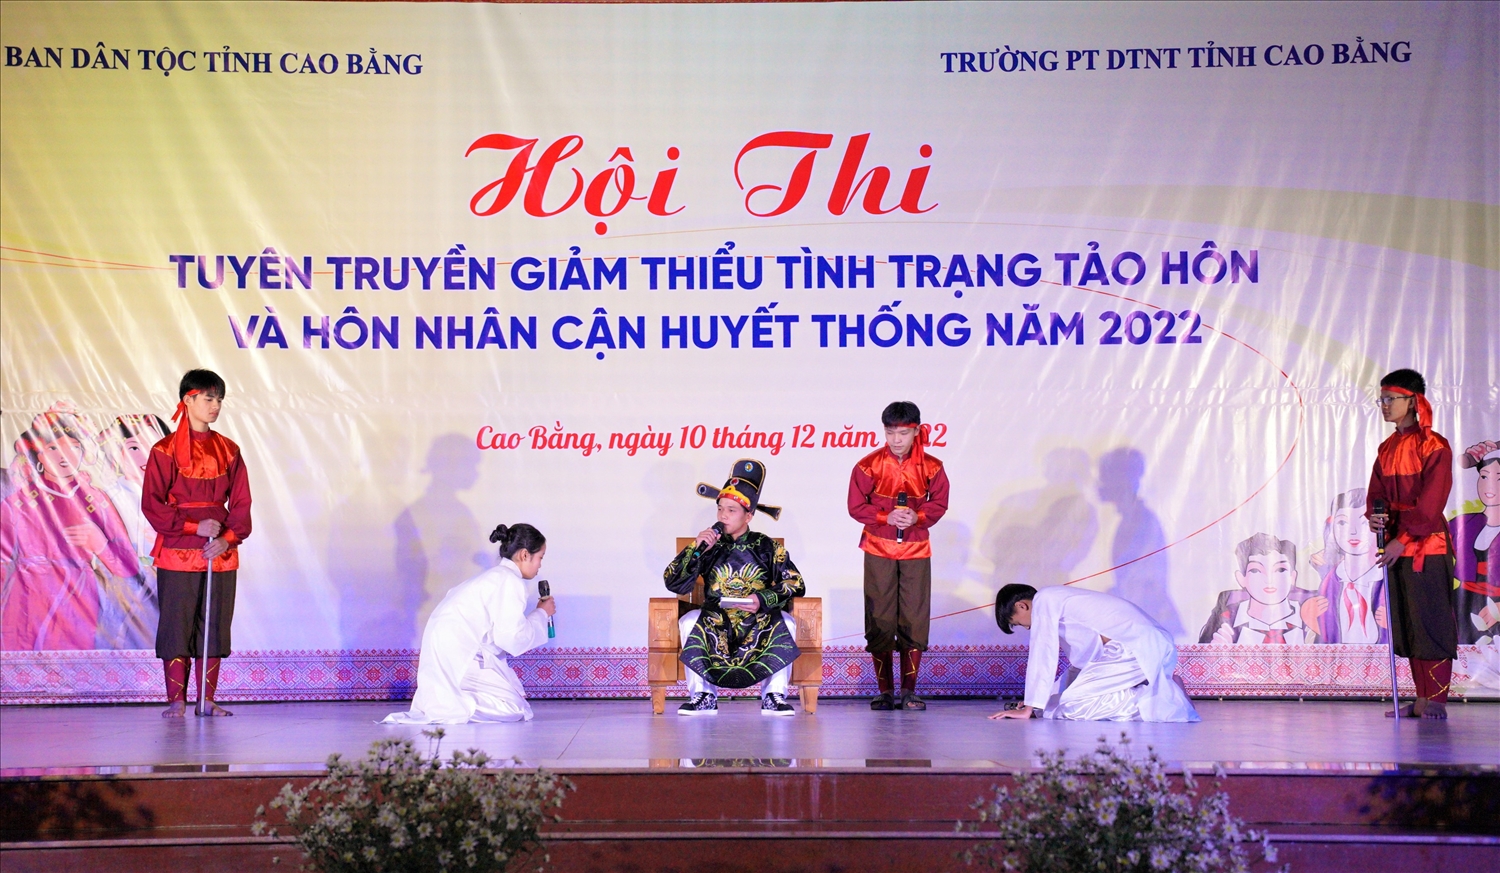 Chương trình phối hợp giữa Ban Dân tộc tỉnh Cao Bằng và Trường THPTDTNT tuyên truyền giảm thiểu tình trạng tảo hôn và hôn nhân cận huyết năm 2022